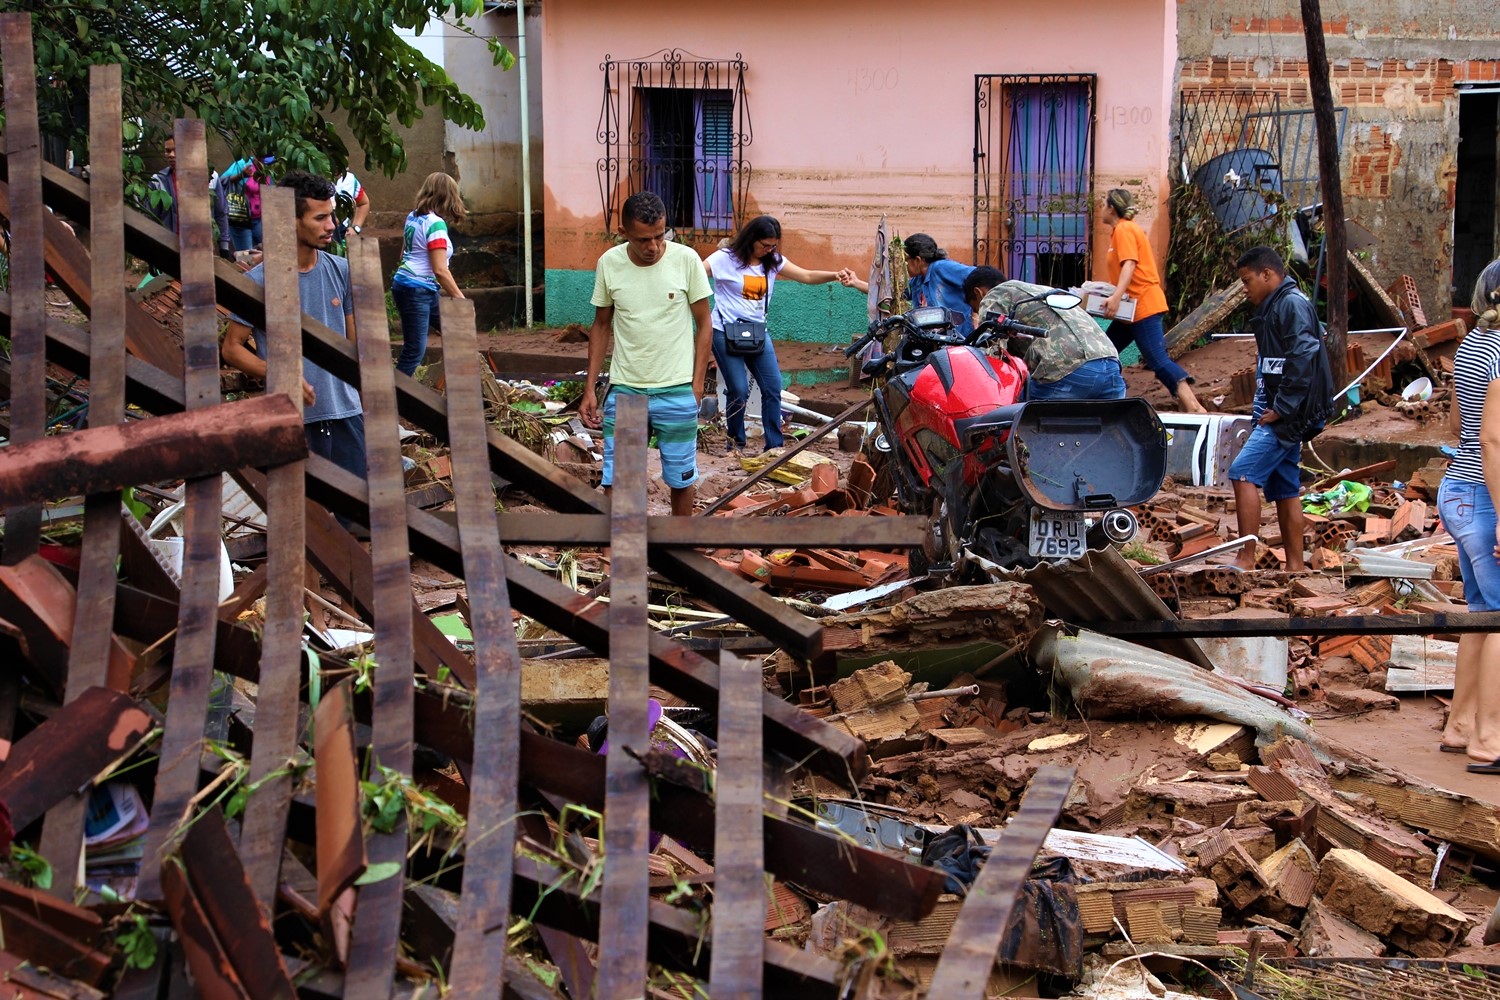 Enxurrada destrói casas do Parque Rodoviário em Teresina